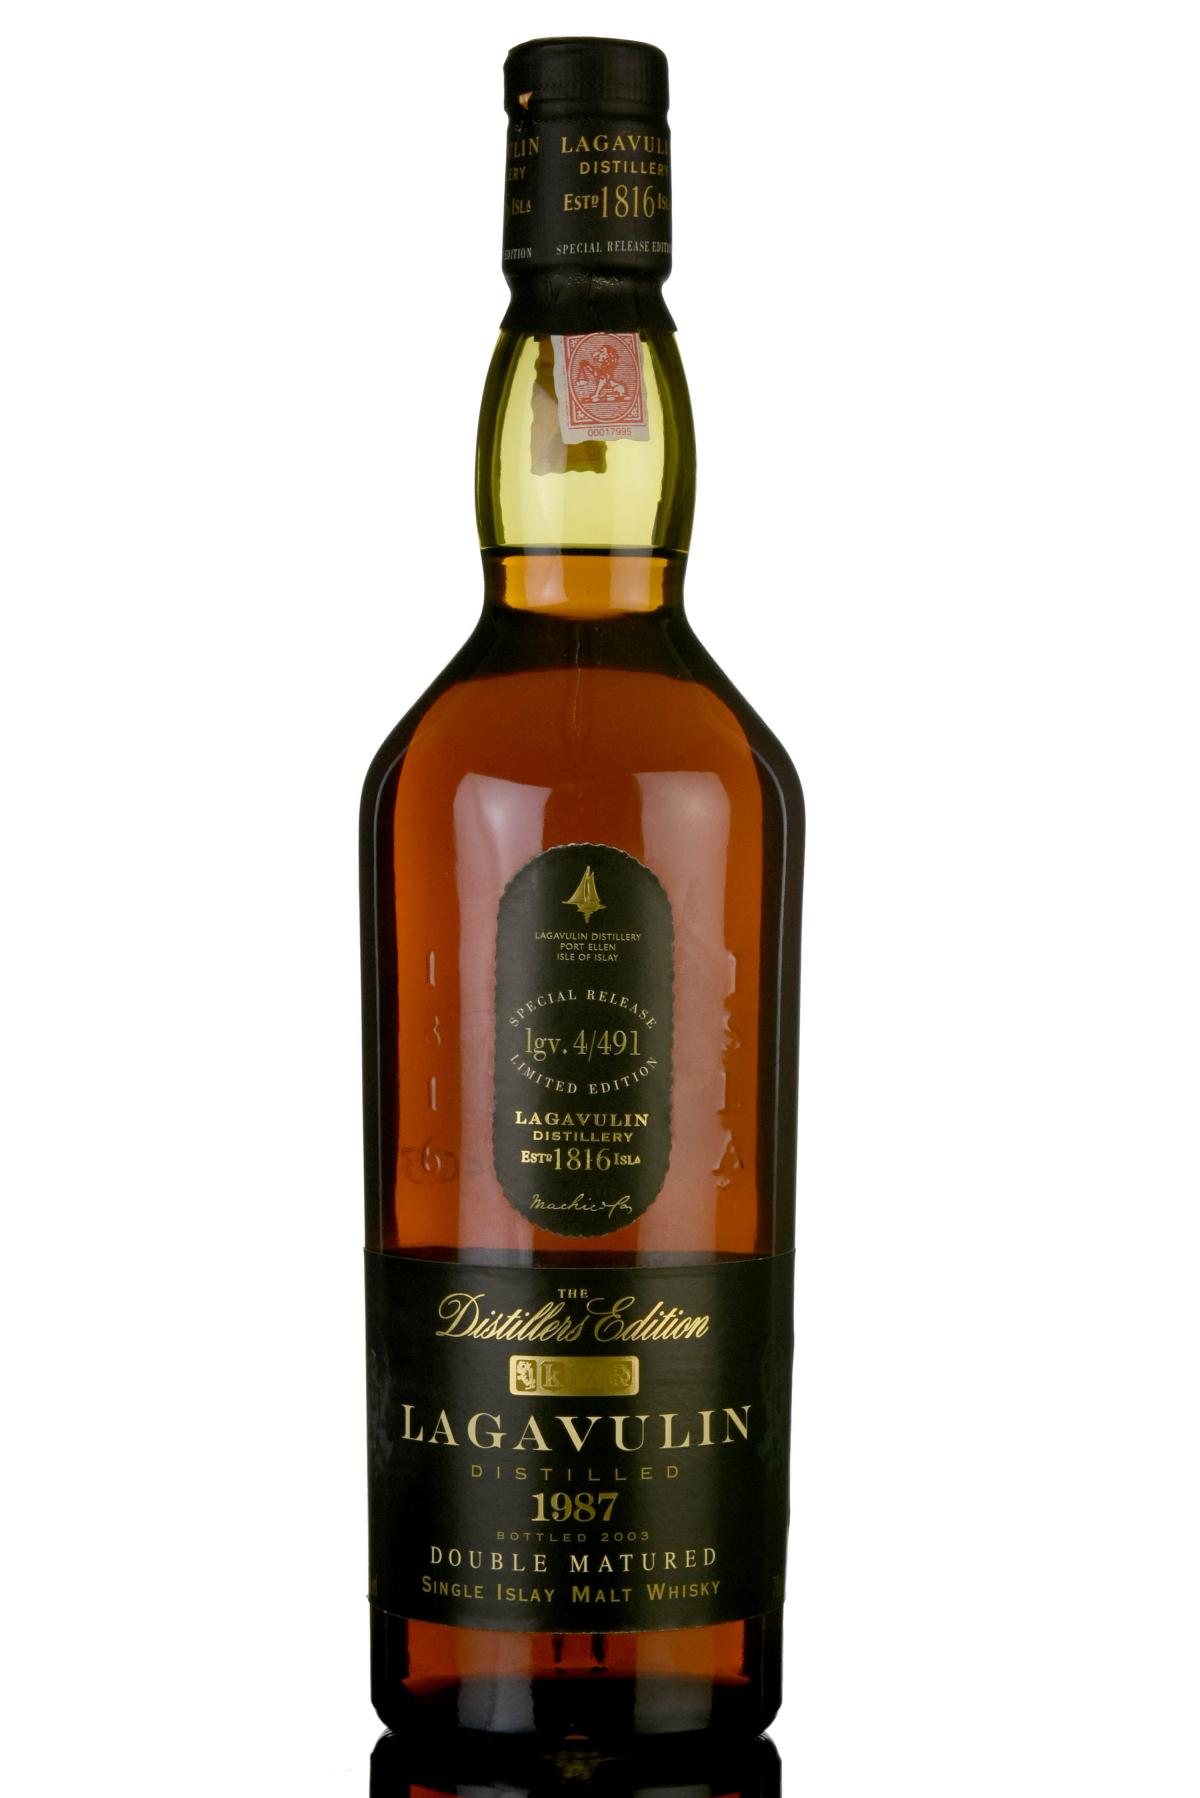 Lagavulin 1987 - Distillers Edition 2003